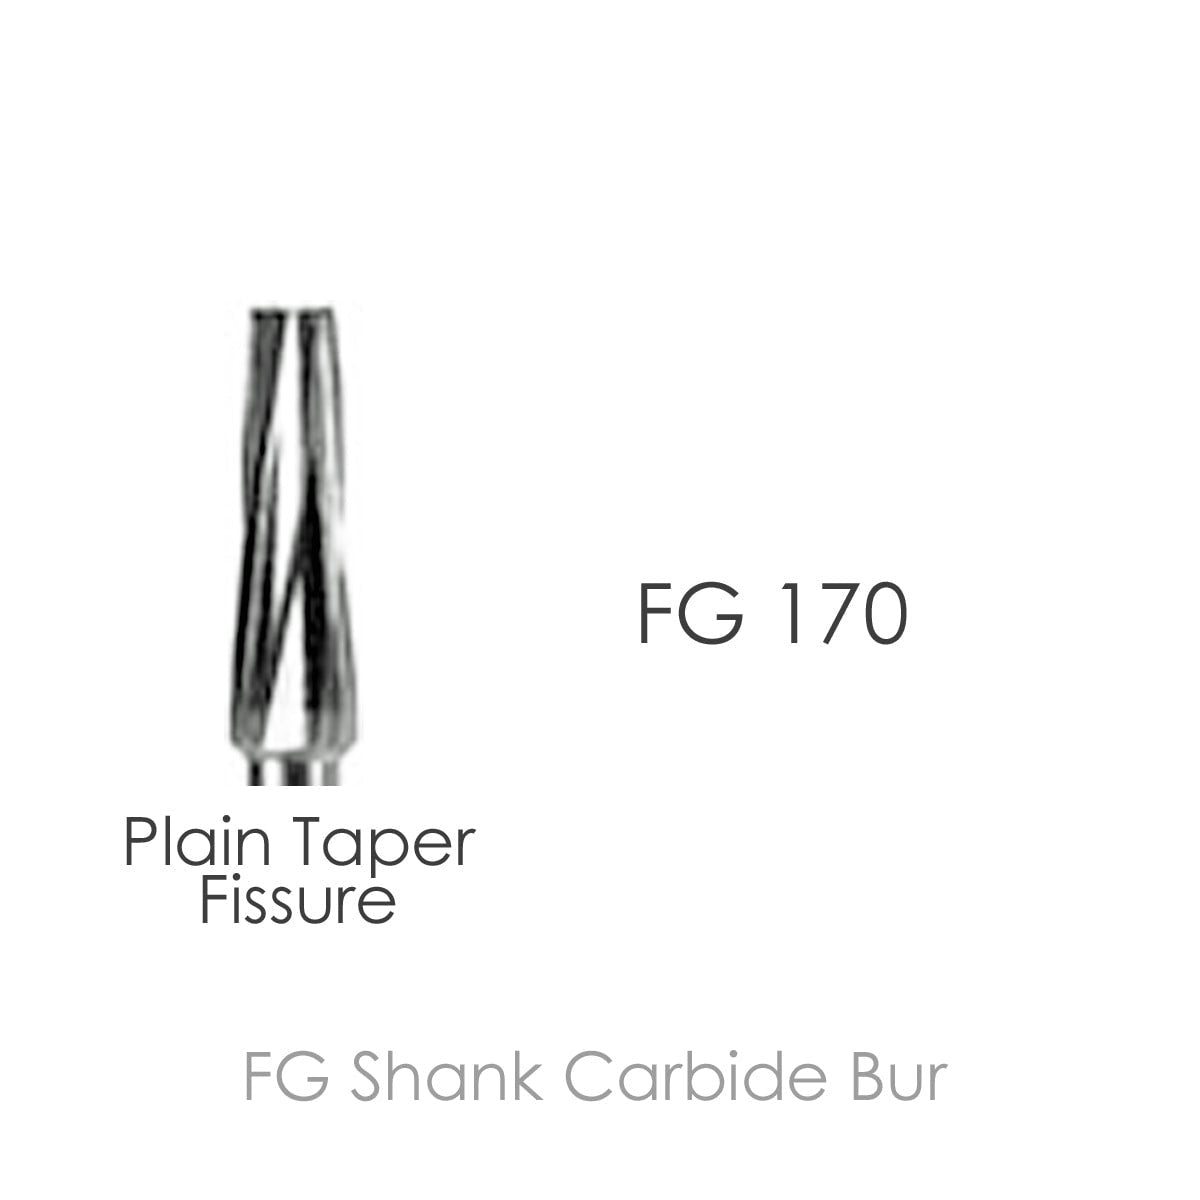 FG Carbide bur # 170, Plain Taper Fissure, 10 pcs/pack